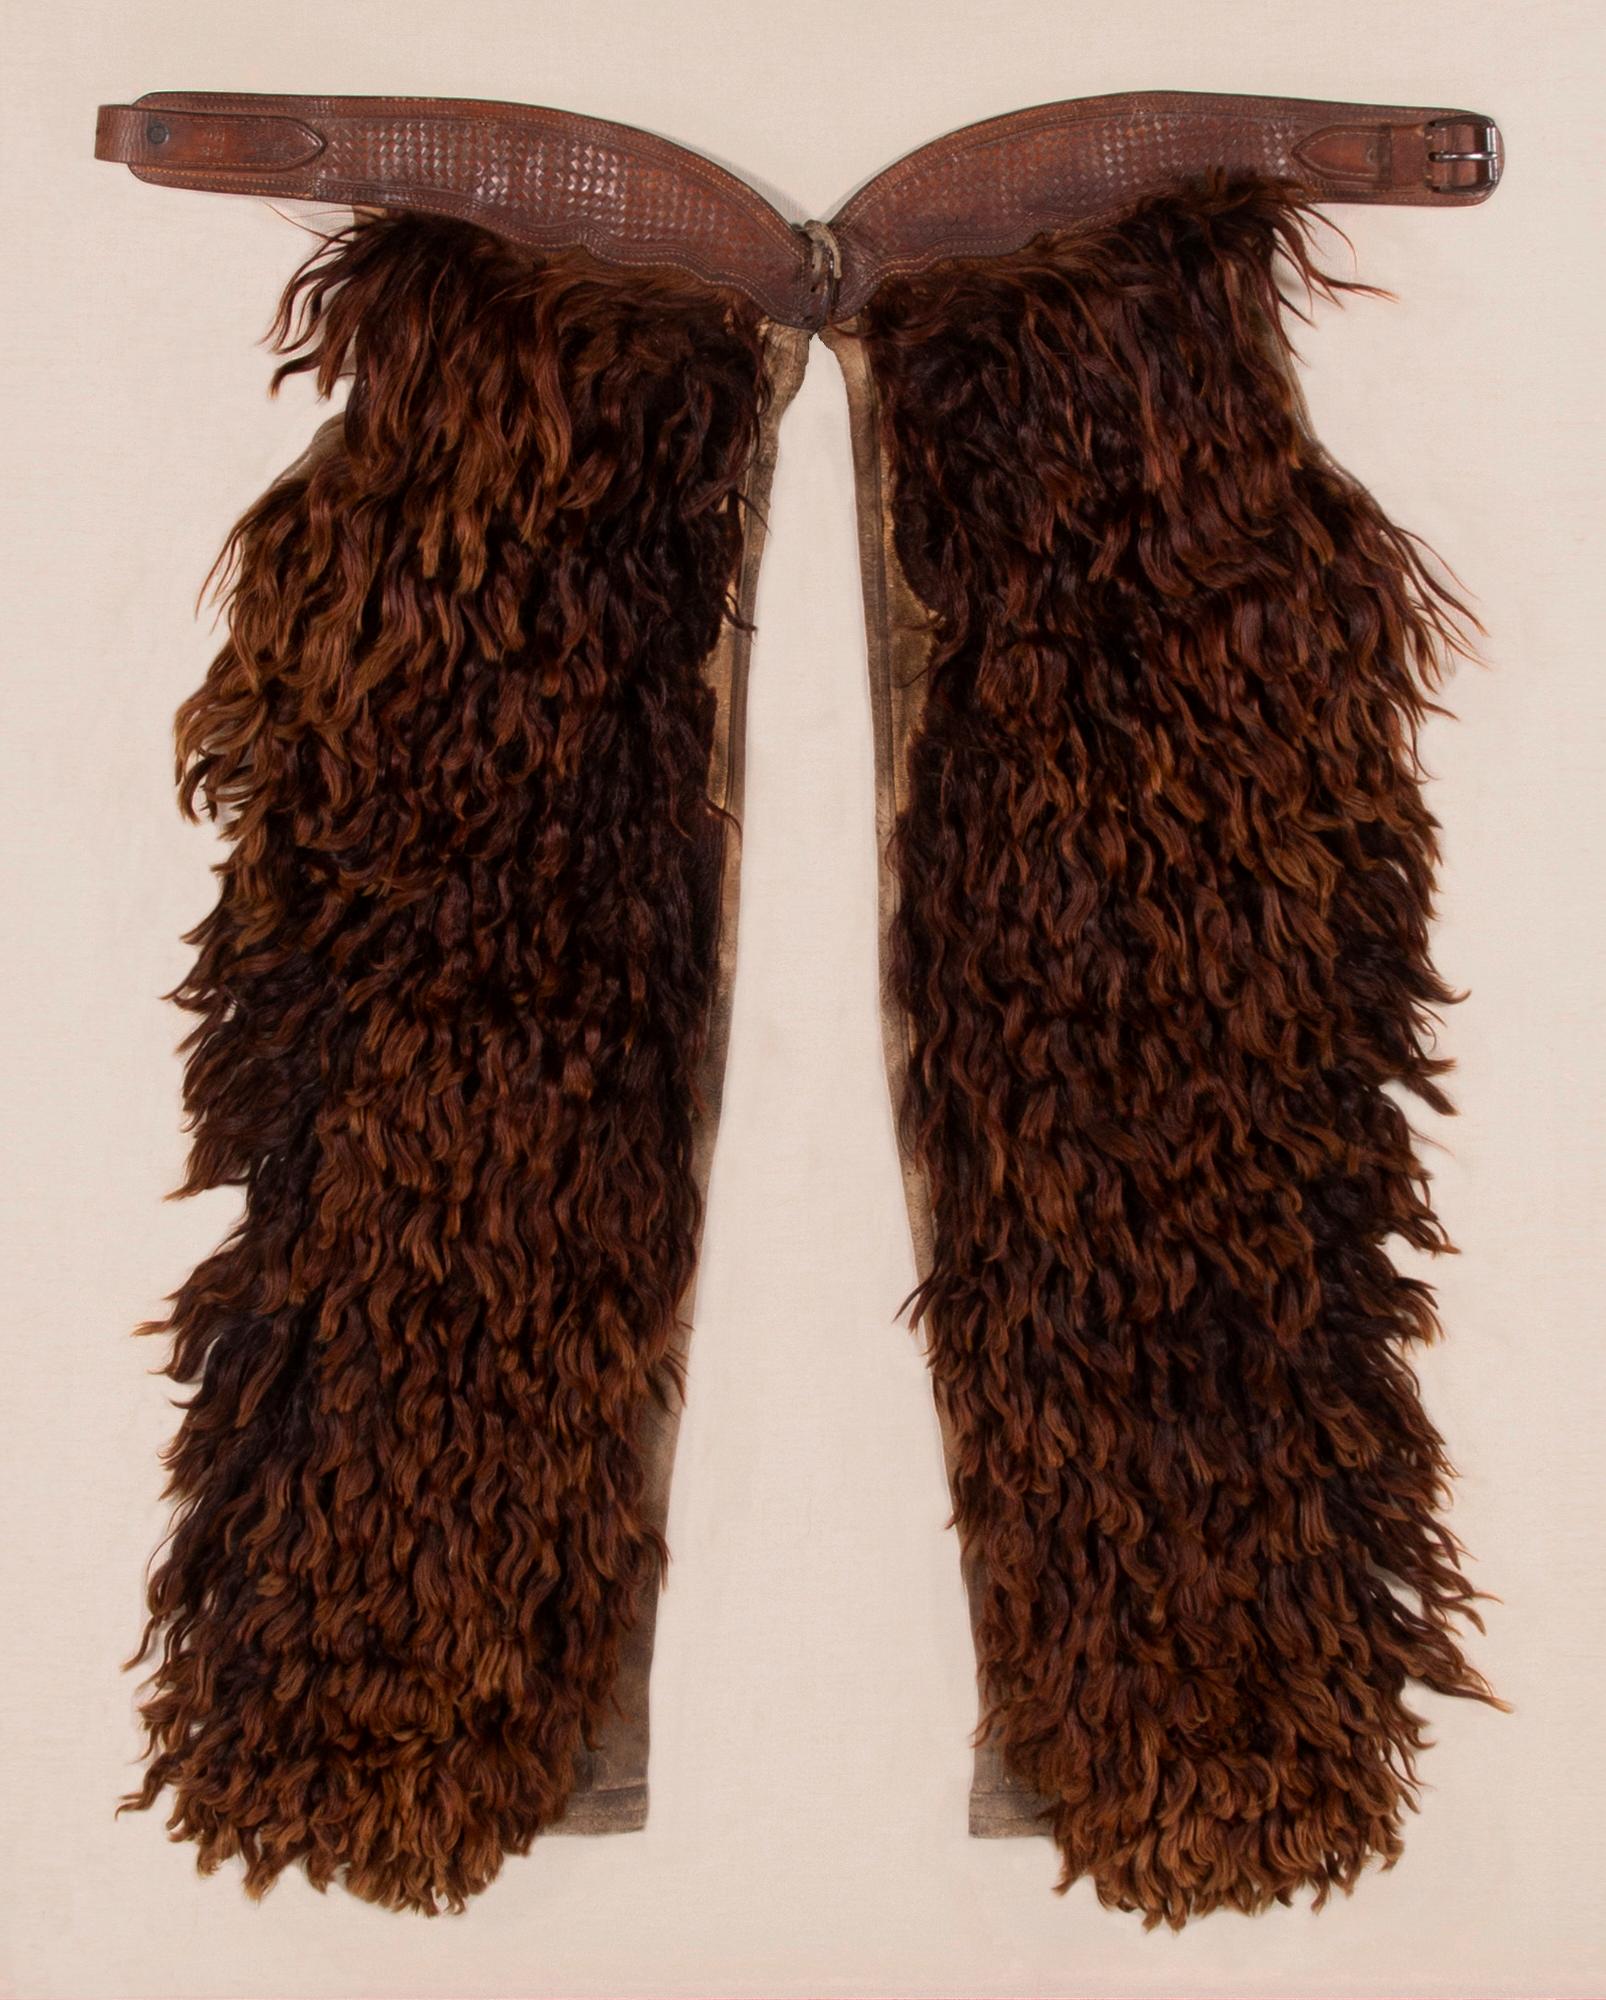 Chaps en laine et angora avec un cuir magnifiquement estampé, fabriquées par la société de sellerie John Clark de Portland, Oregon, signées, vers 1873-1929.

Chaps en cuir et en toile, recouvertes d'angora teint, fabriquées par la John F. Clark